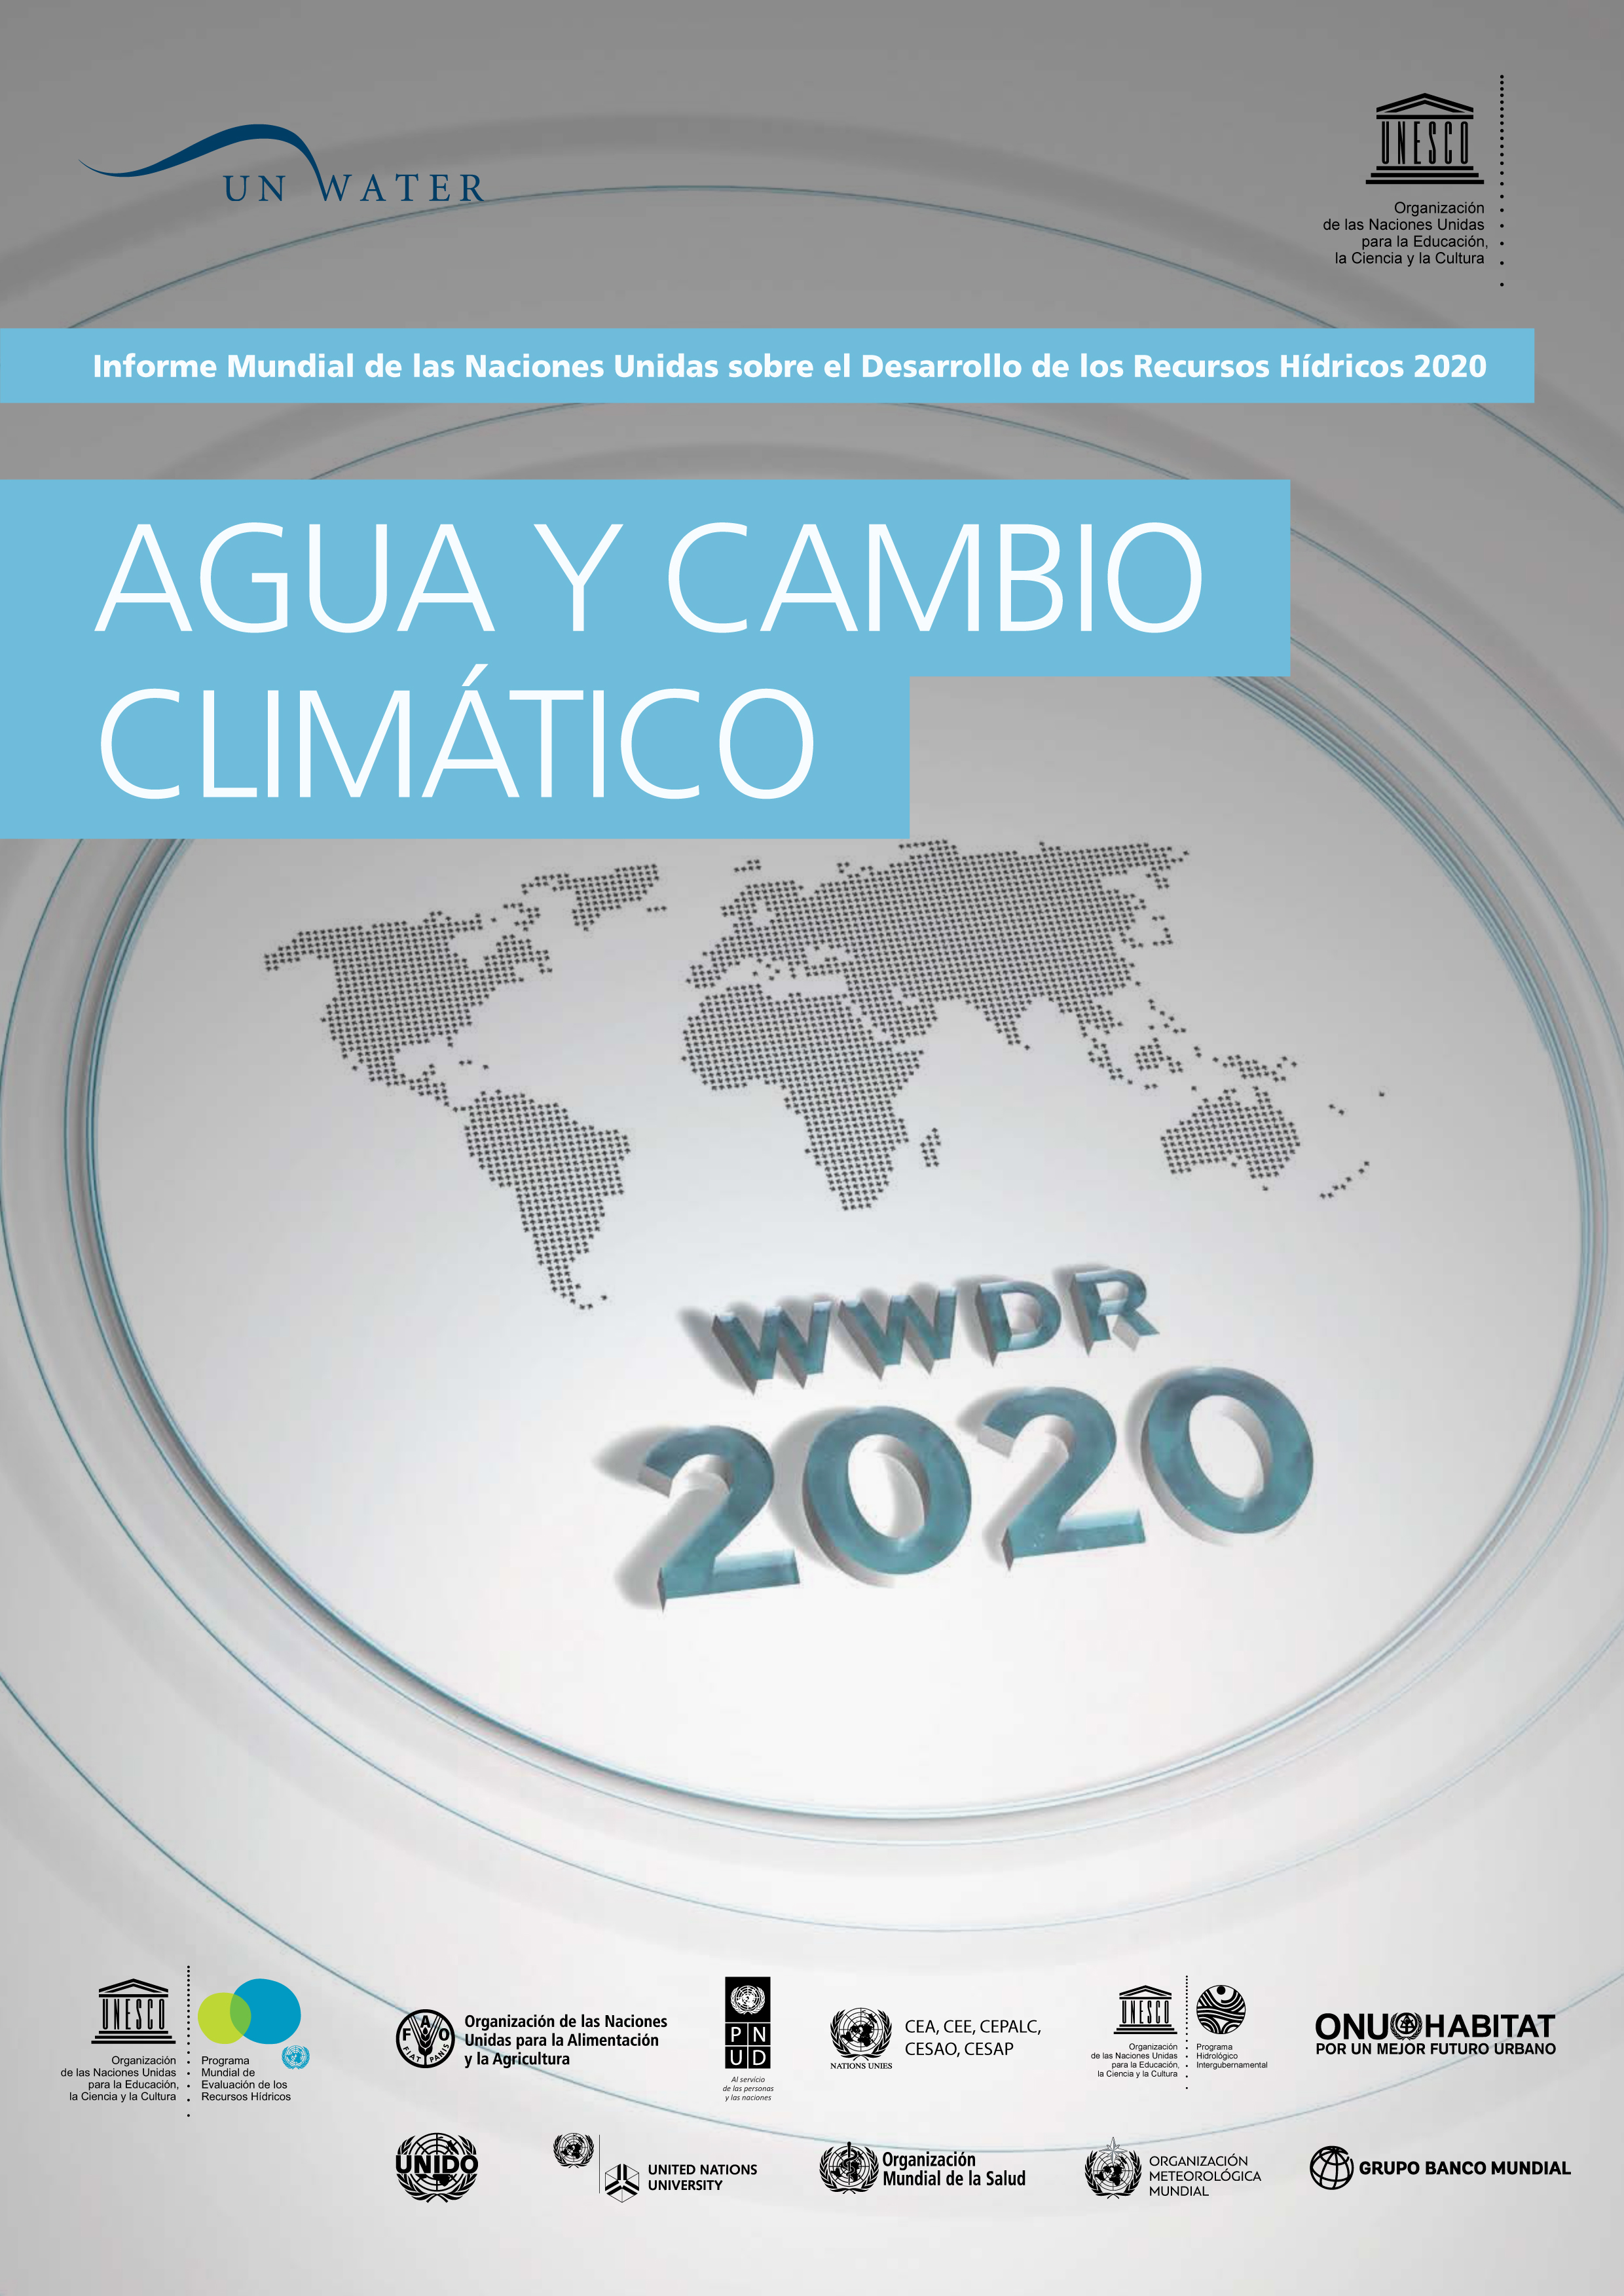 image of Informe Mundial de las Naciones Unidas sobre el Desarrollo de los Recursos Hídricos 2020